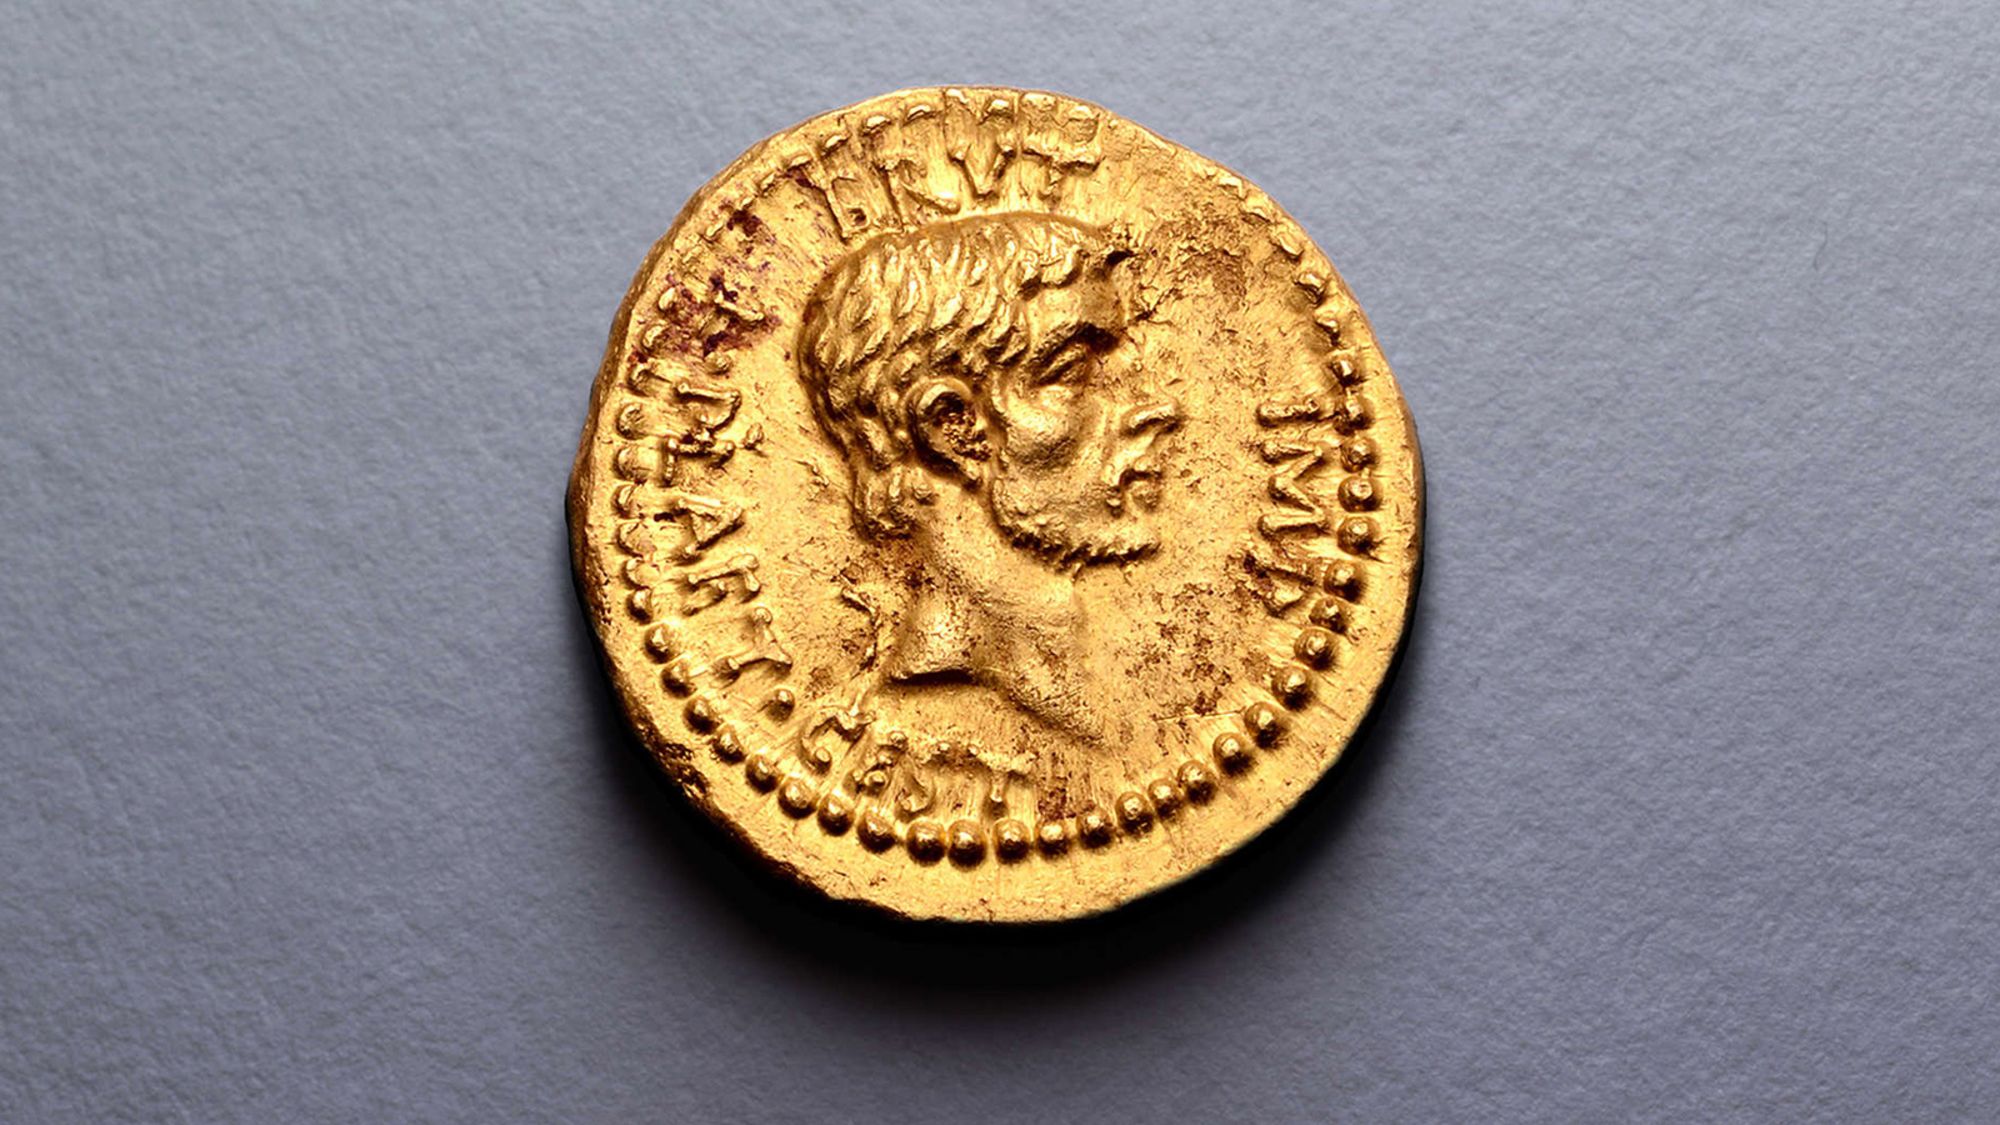 New York returns 'extraordinarily rare' gold coin to Greece